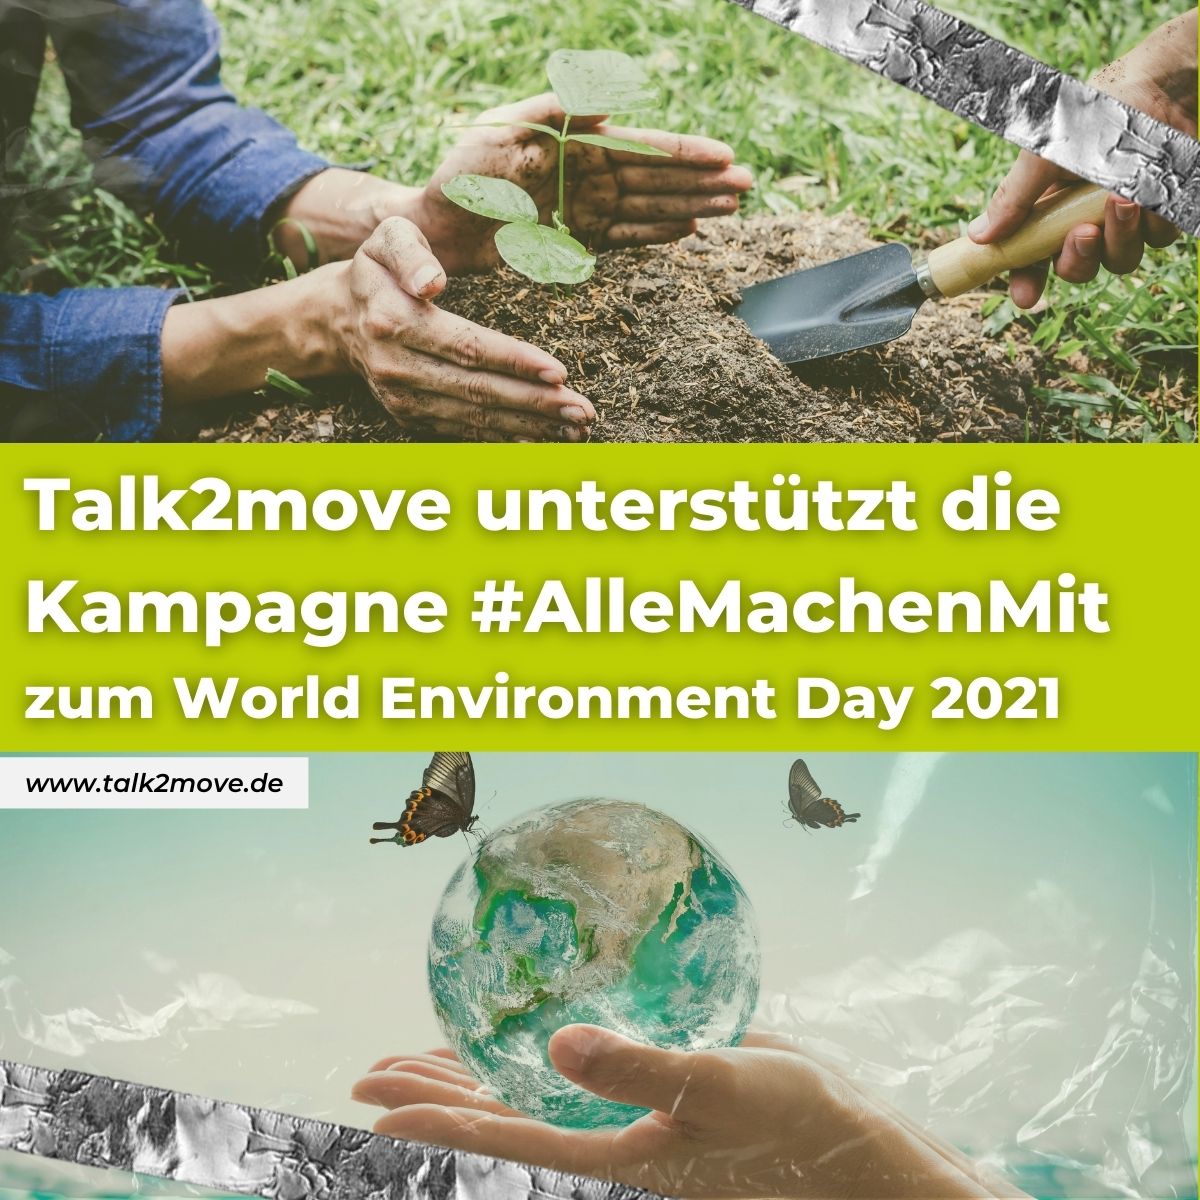 Talk2move unterstützt die Kampagne #AlleMachenMit zum World Environment Day 2021